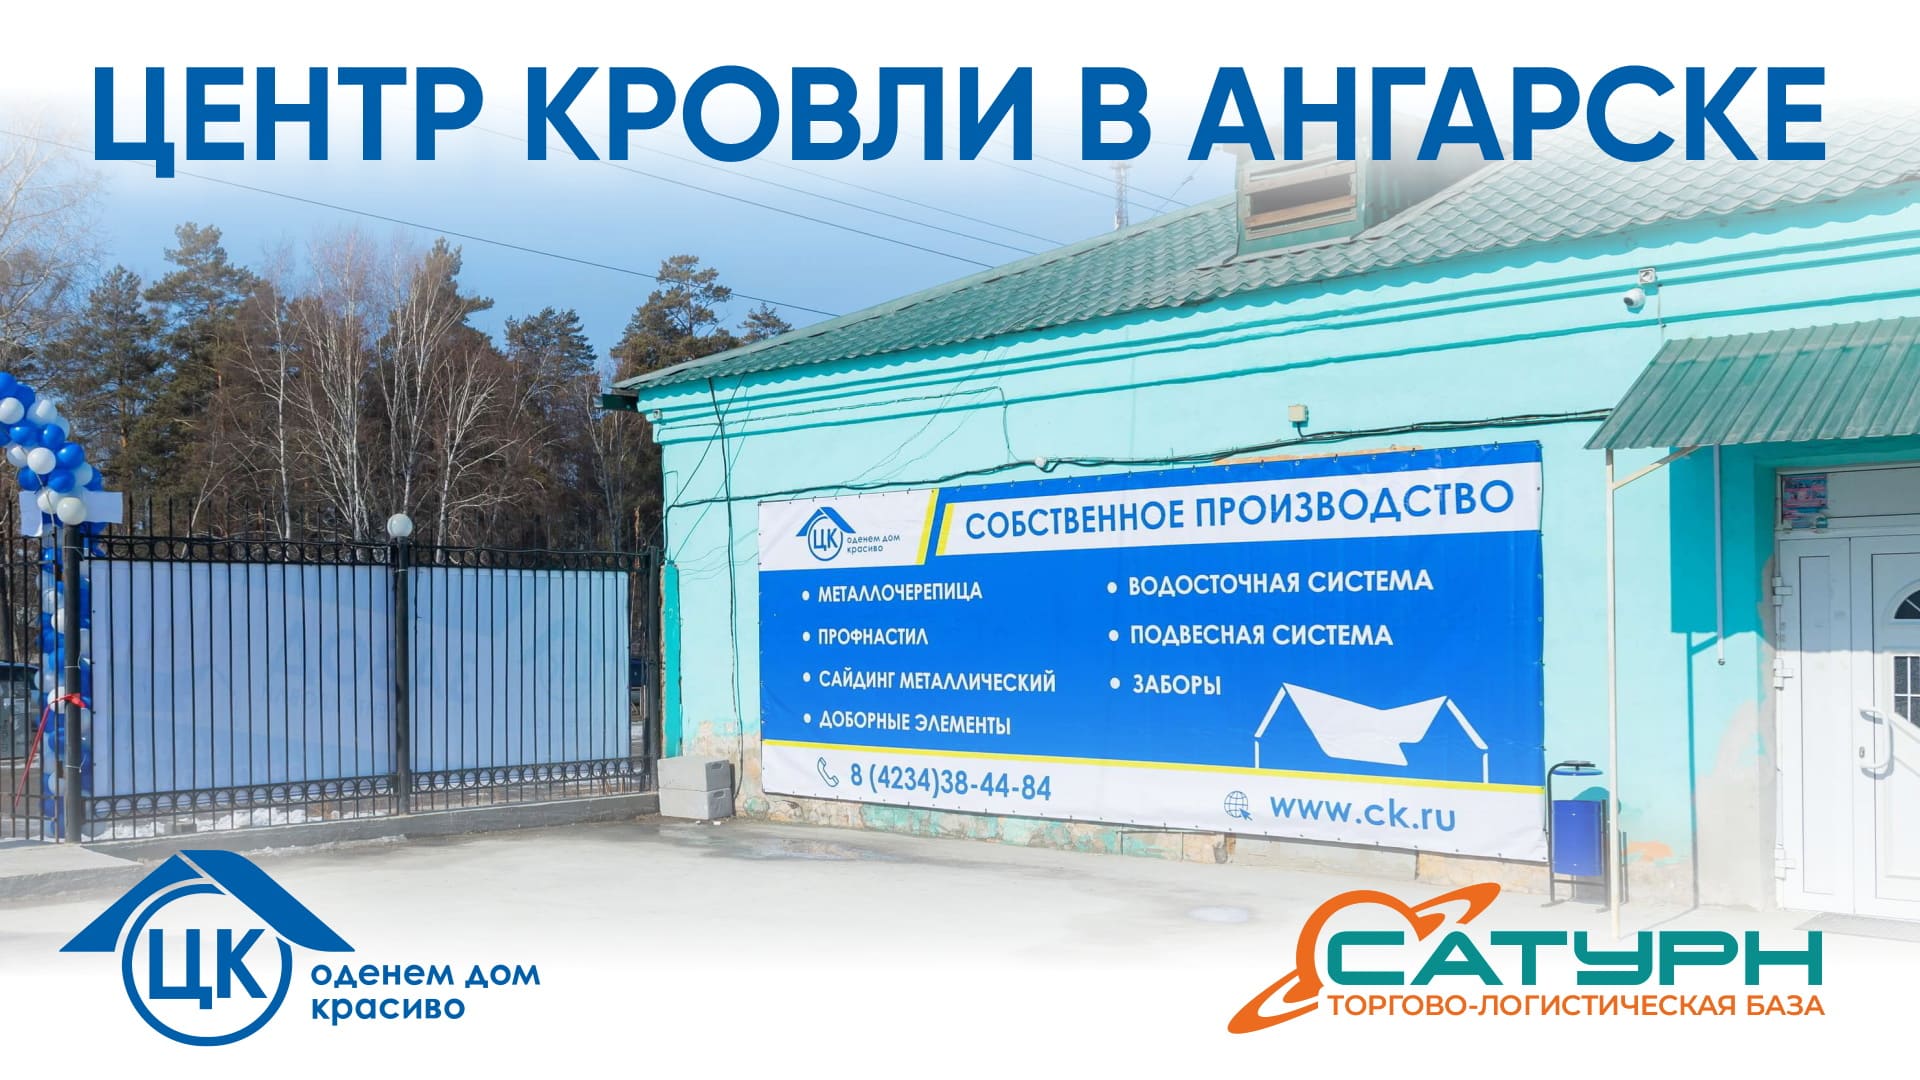 Центр Кровли один из крупнейших производителей кровельных, фасадных, оградительных  комплексных решений на Дальнем Востоке и Восточной Сибири.